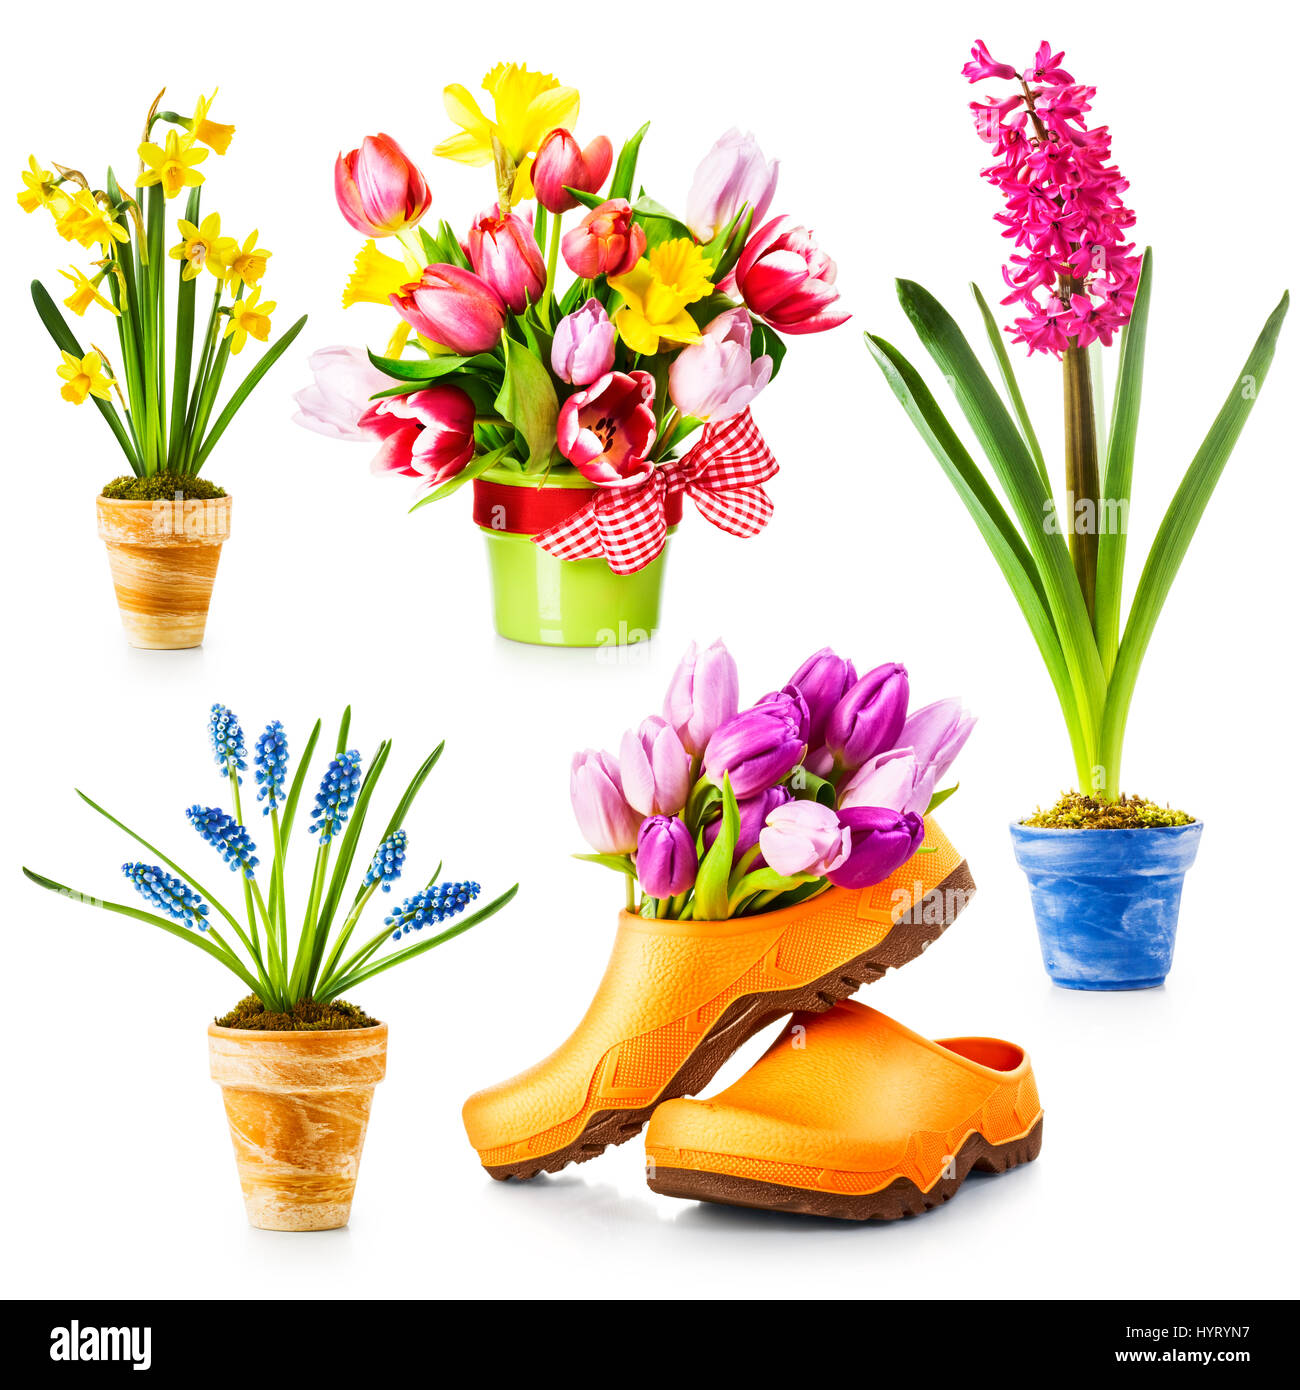 Fiori di Primavera, vaso con tulip, daffodil, giacinto, muscari raccolta isolati su sfondo bianco Foto Stock